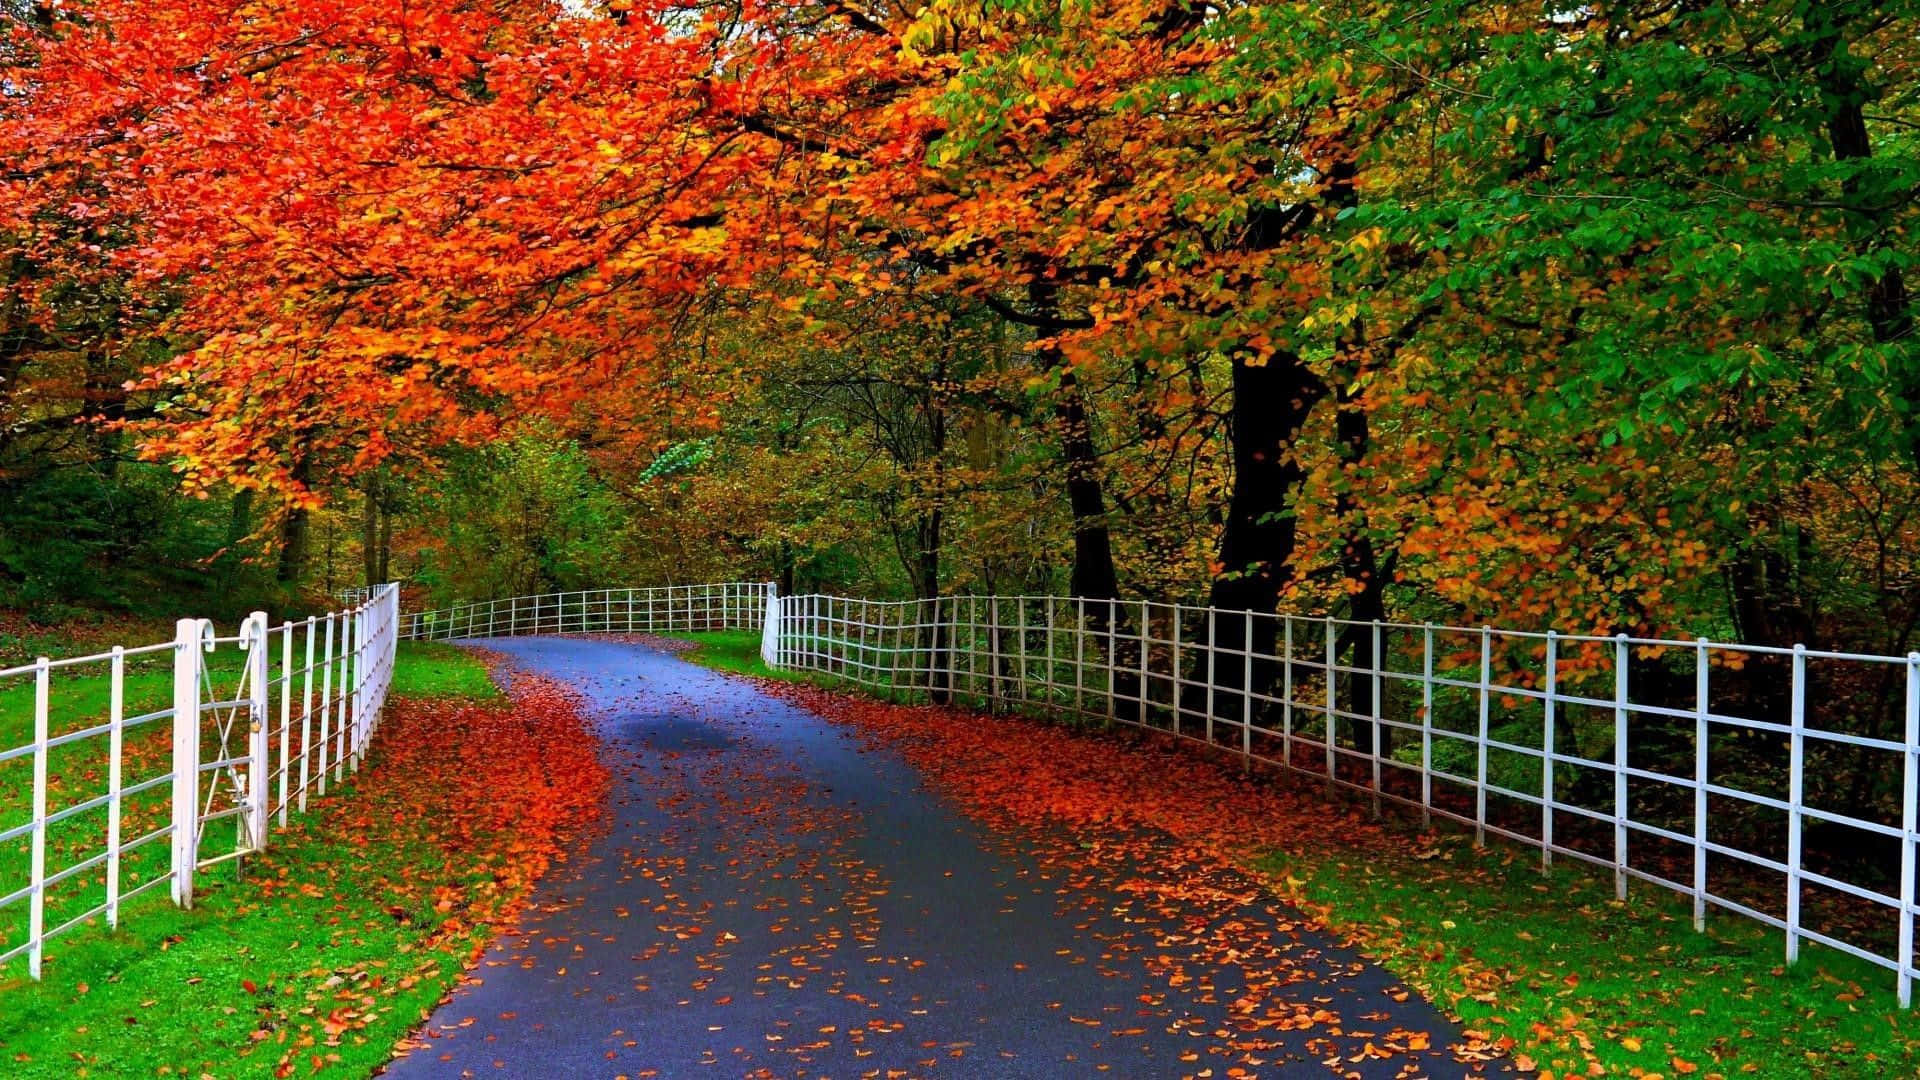 Genießensie Diesen Malerischen Herbstblick Auf Ein Schönes Flussufer Mit Majestätischen Bäumen Im Hintergrund. Wallpaper